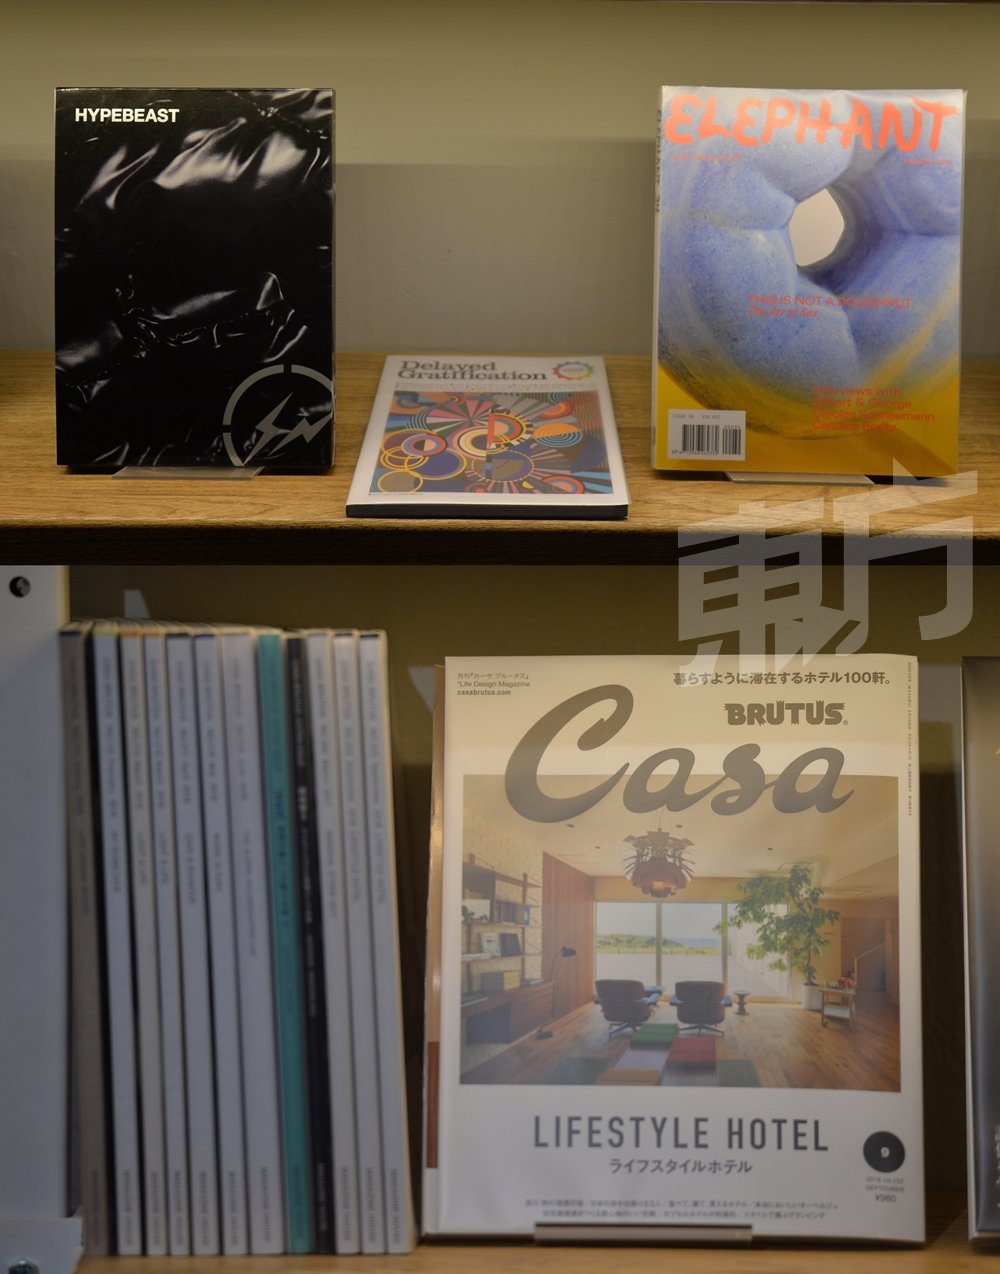 日本知名建筑设计杂志《Casa BRUTUS》被奉为设计迷必收藏的杂志，就算看不懂日文，光是看图片，也能获益良多。除了生活设计类，馆里也可找到许多欧美杂志，如世界知名的英国生活时尚杂志《HYPEBEAST》、荷兰的艺术与视觉文化季刊《ELEPHANT》。